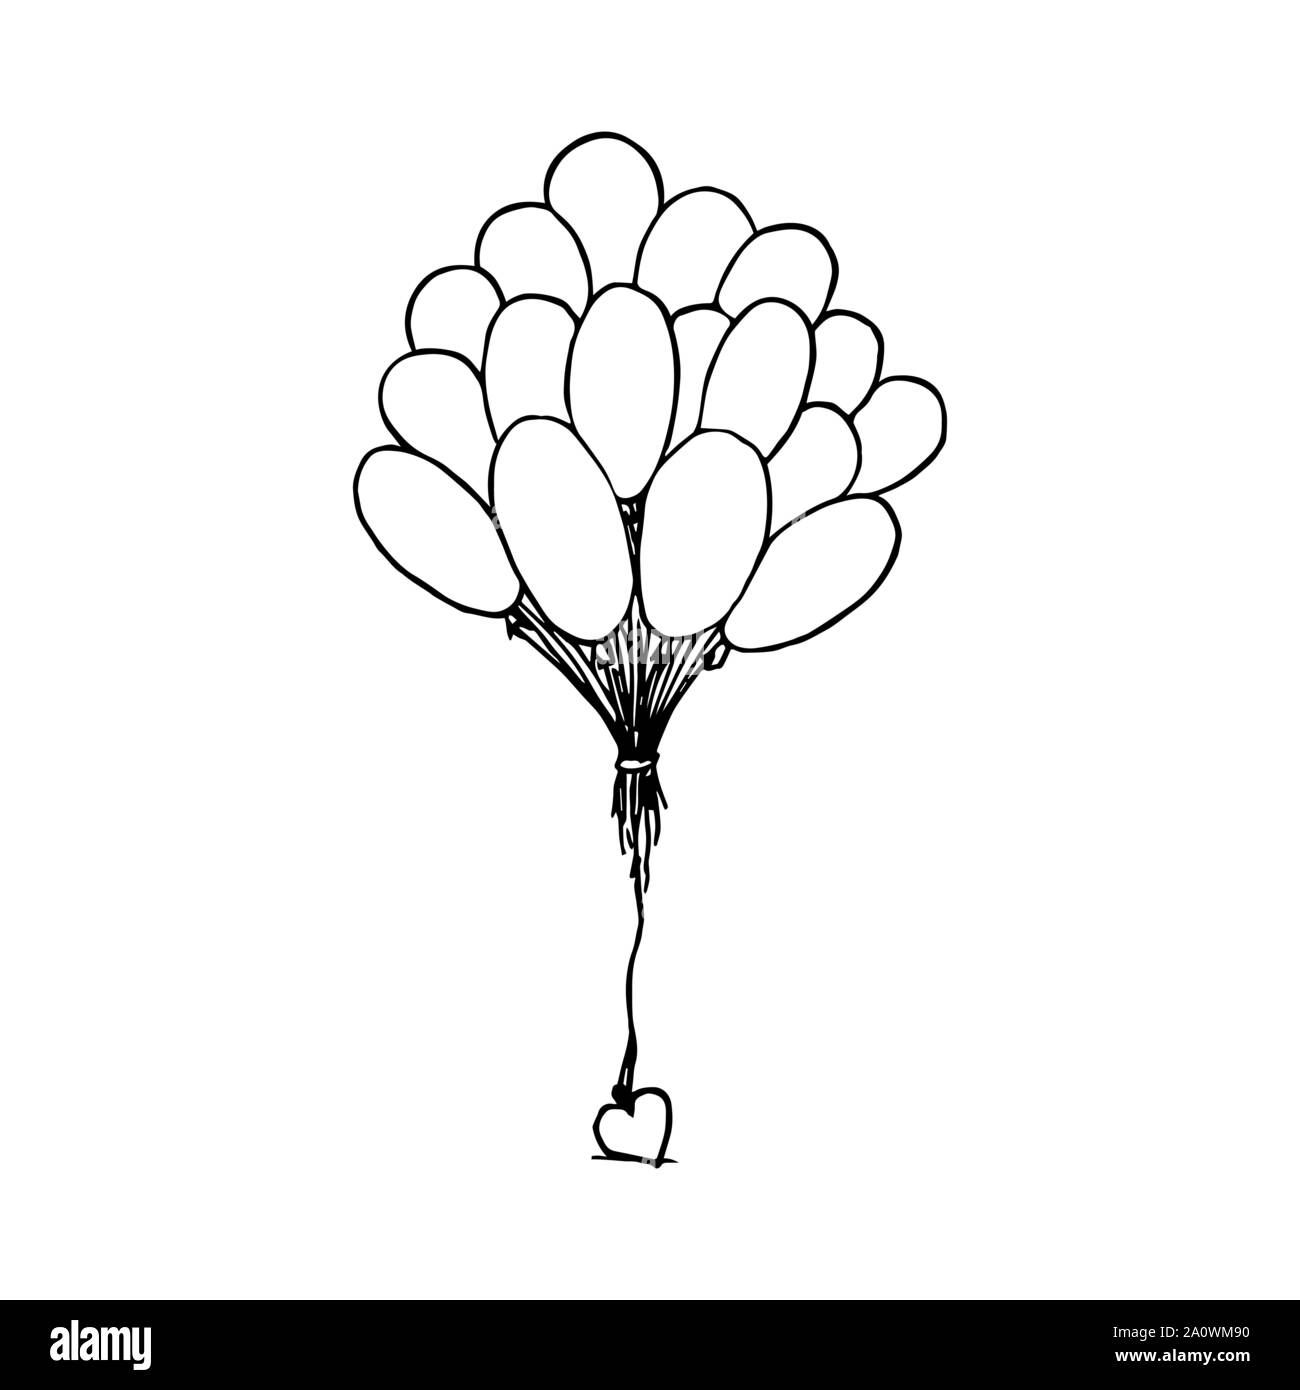 Bündel Luftballons zusammen mit Herz gebunden. Schwarzer Umriss auf weißem Hintergrund. Bild kann in Grußkarten, Poster, Flyer, Banner, Logo verwendet werden, die weitere Gestaltung etc. Vector Illustration. EPS 10. Stock Vektor